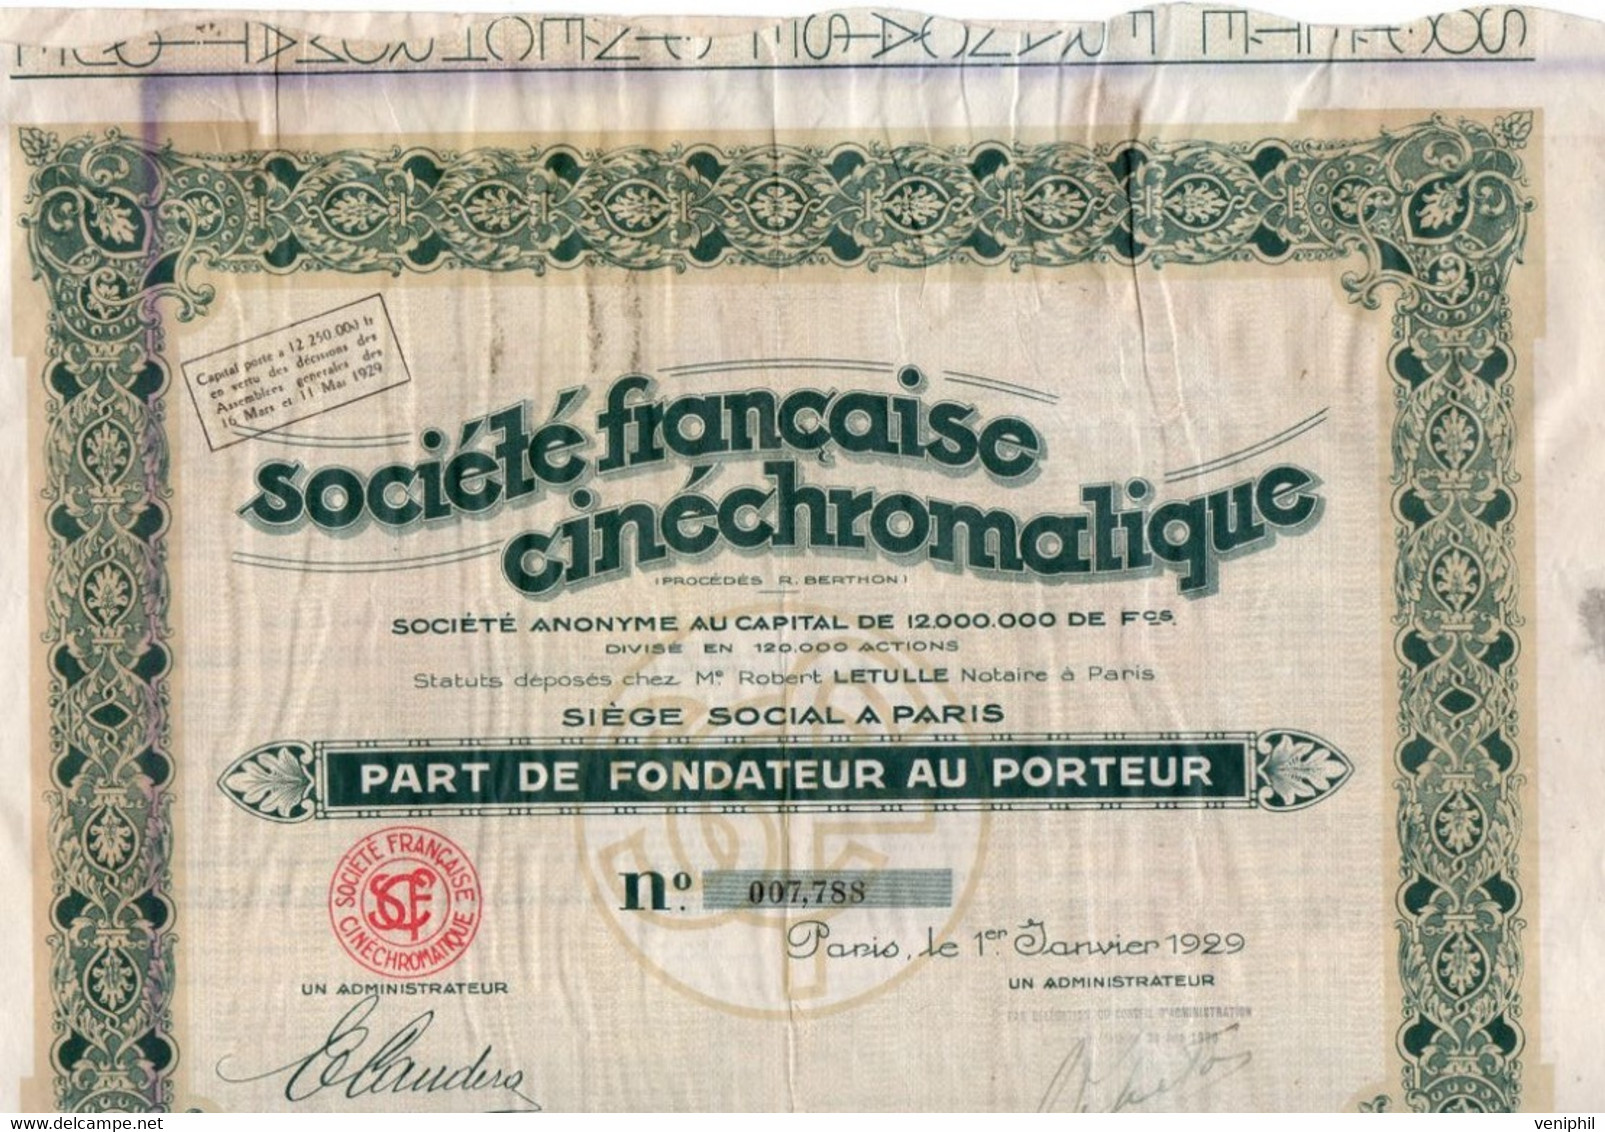 PART DE FONDATEUR -SOCIETE FRANCAISE CINECHROMATIQUE -ANNEE 1929 - Cinéma & Theatre